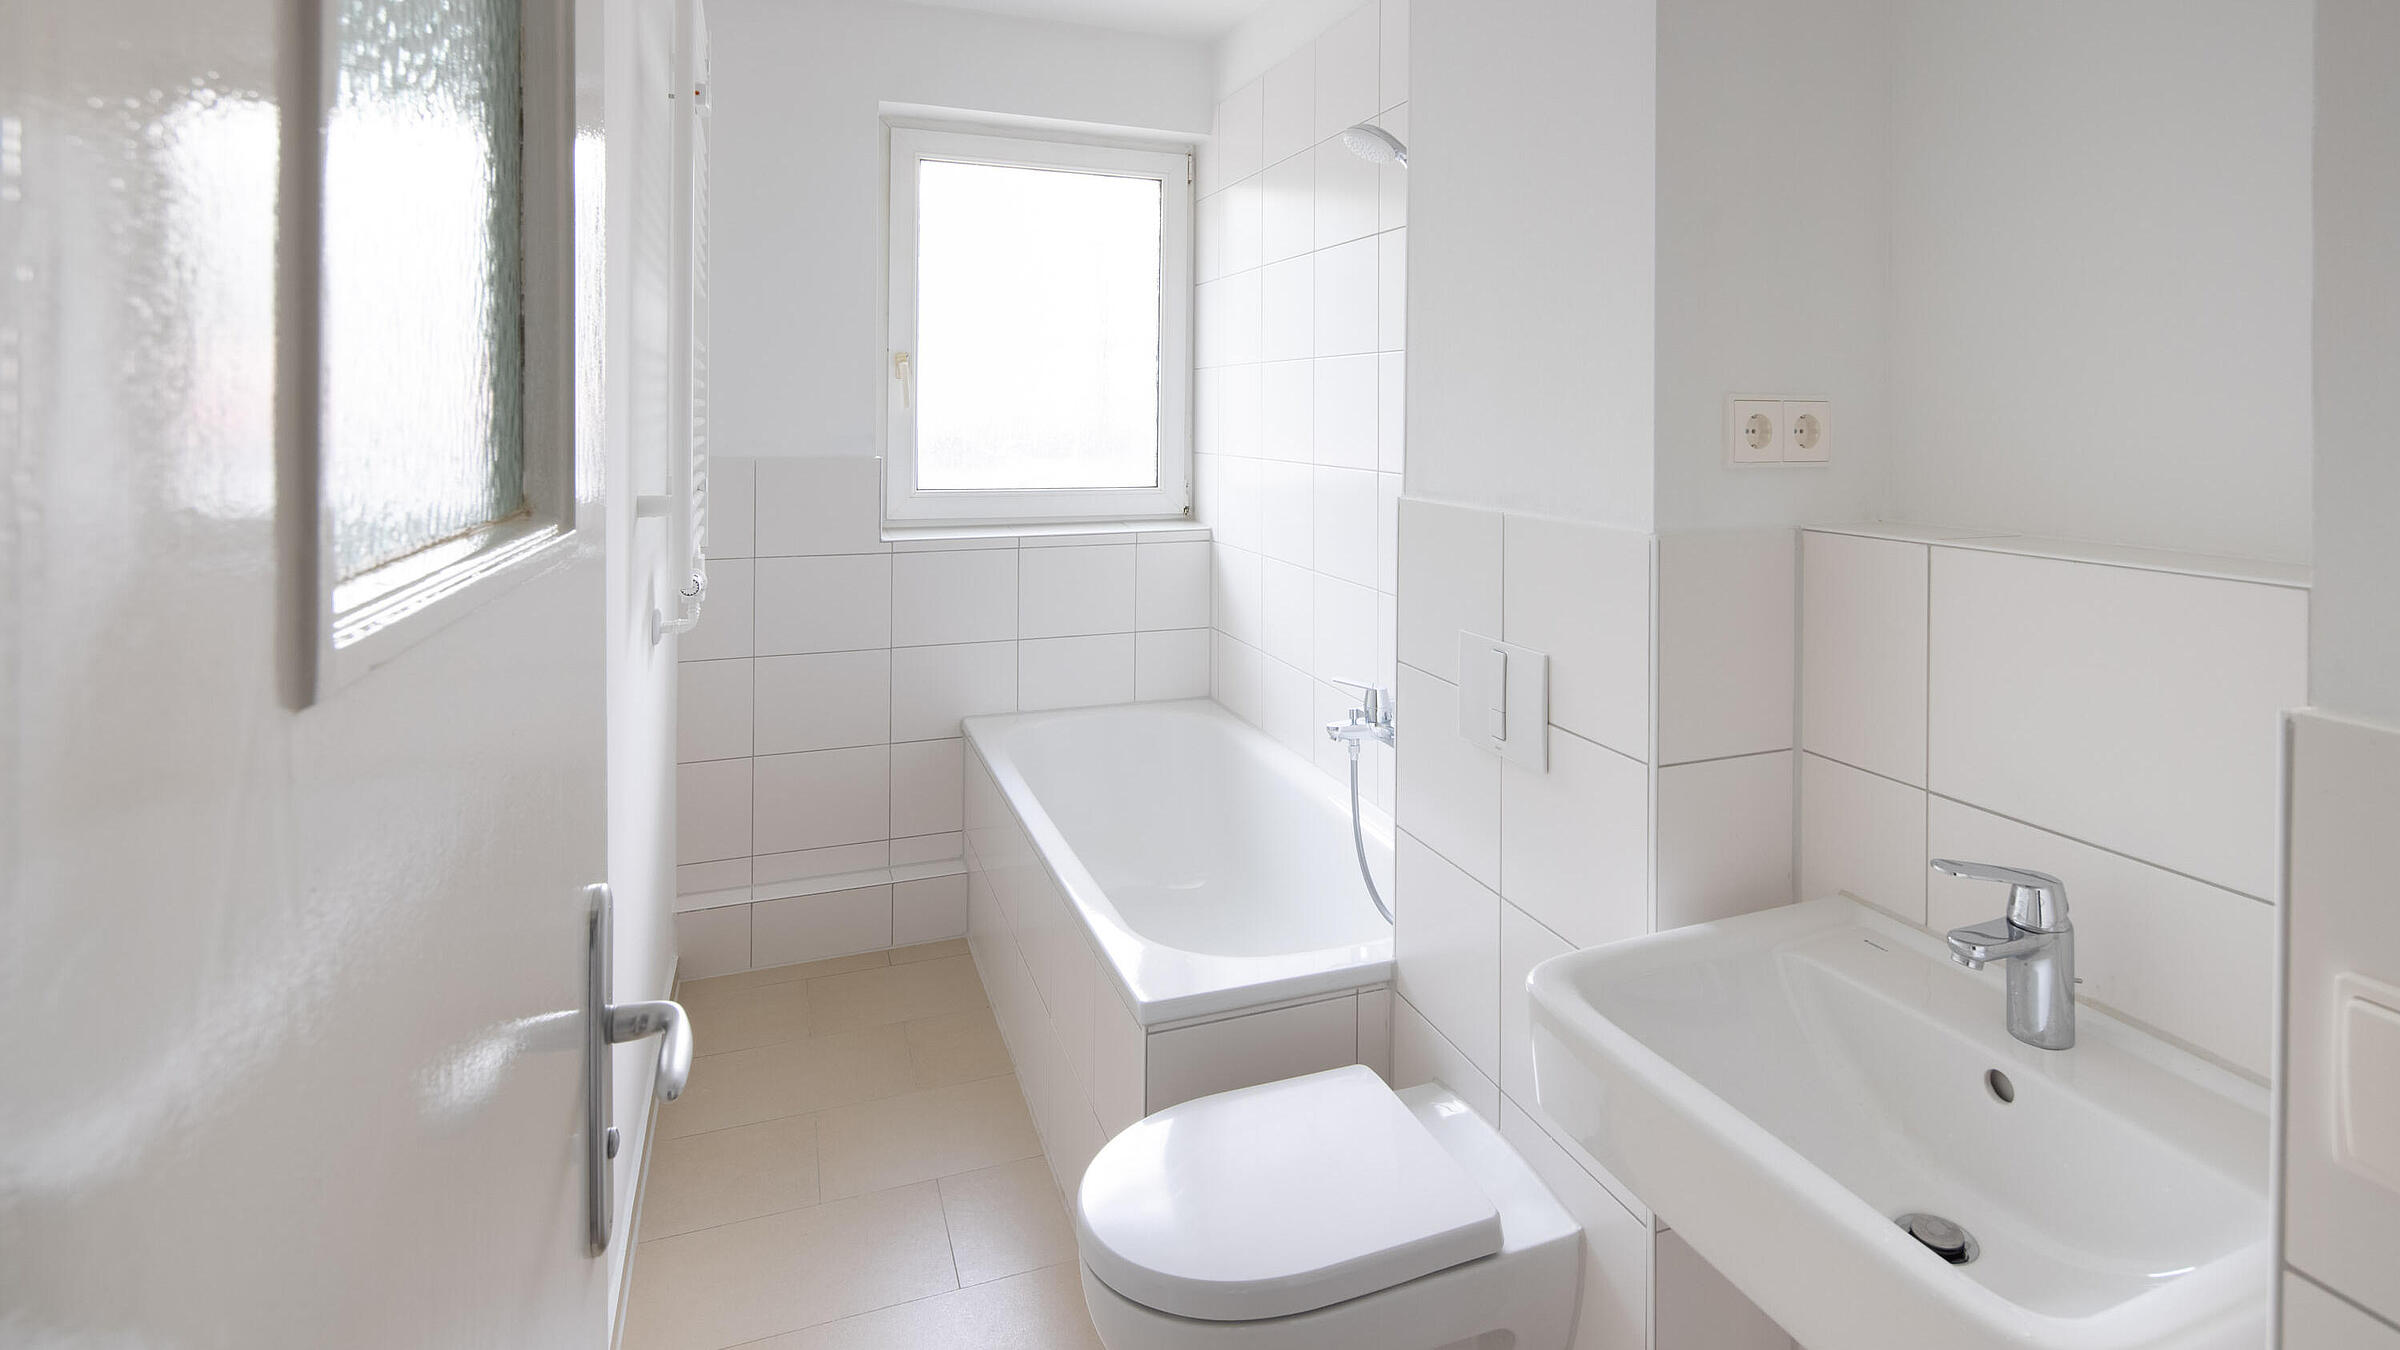 Innenaufnahme zeigt ein modern gefliestes Badezimmer mit Waschbecken, WC und Badewanne.